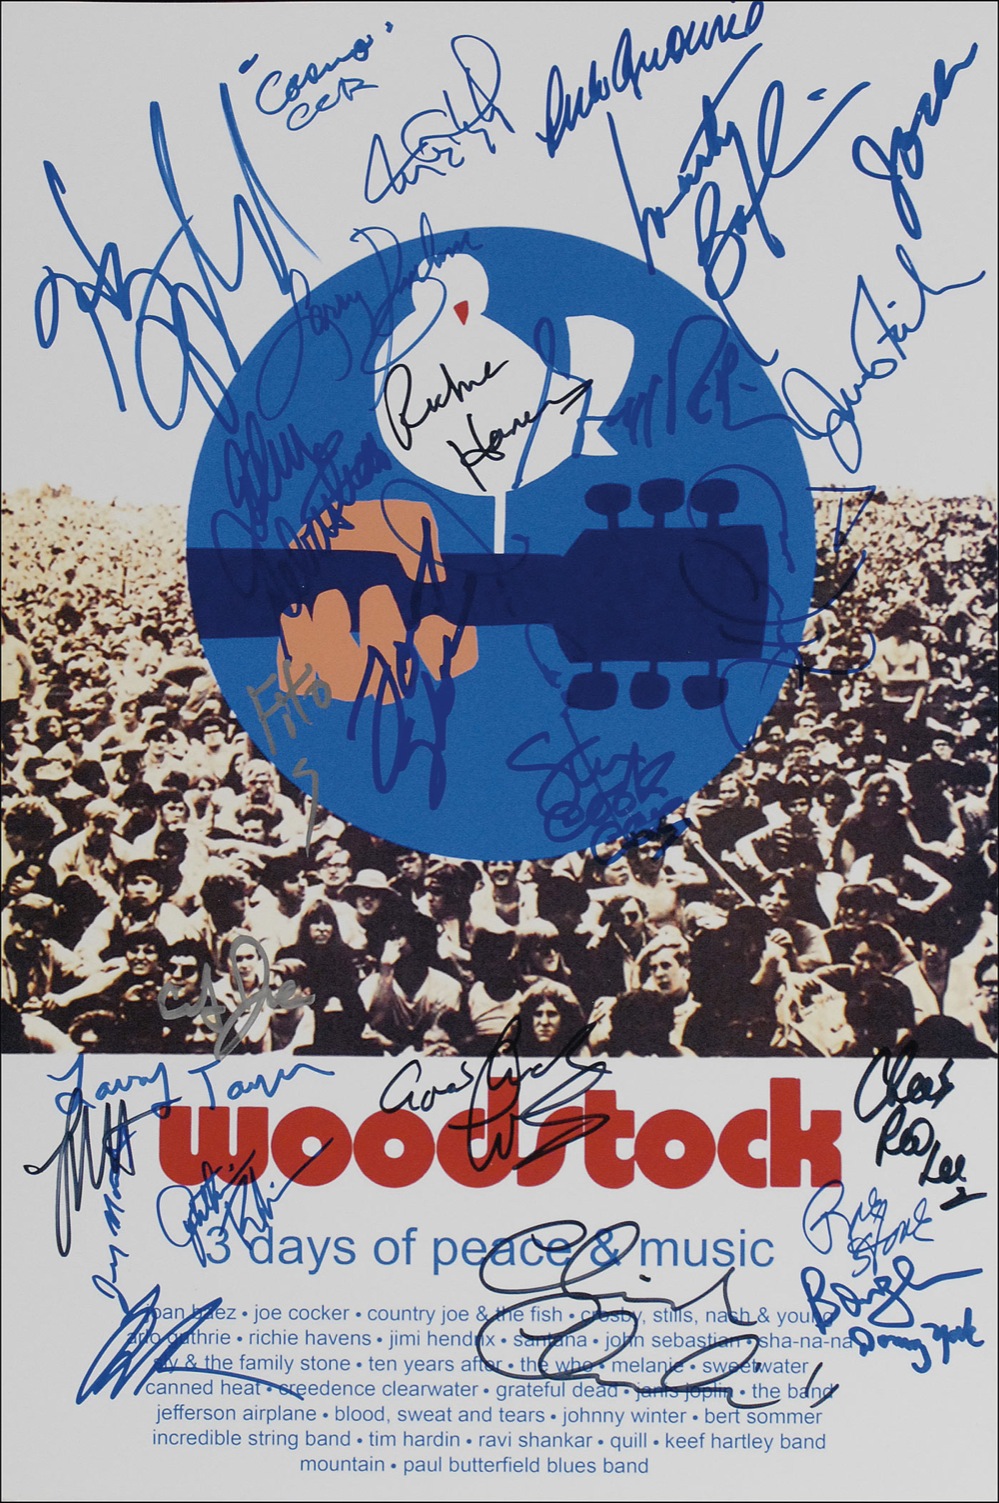 Lot #785 Woodstock